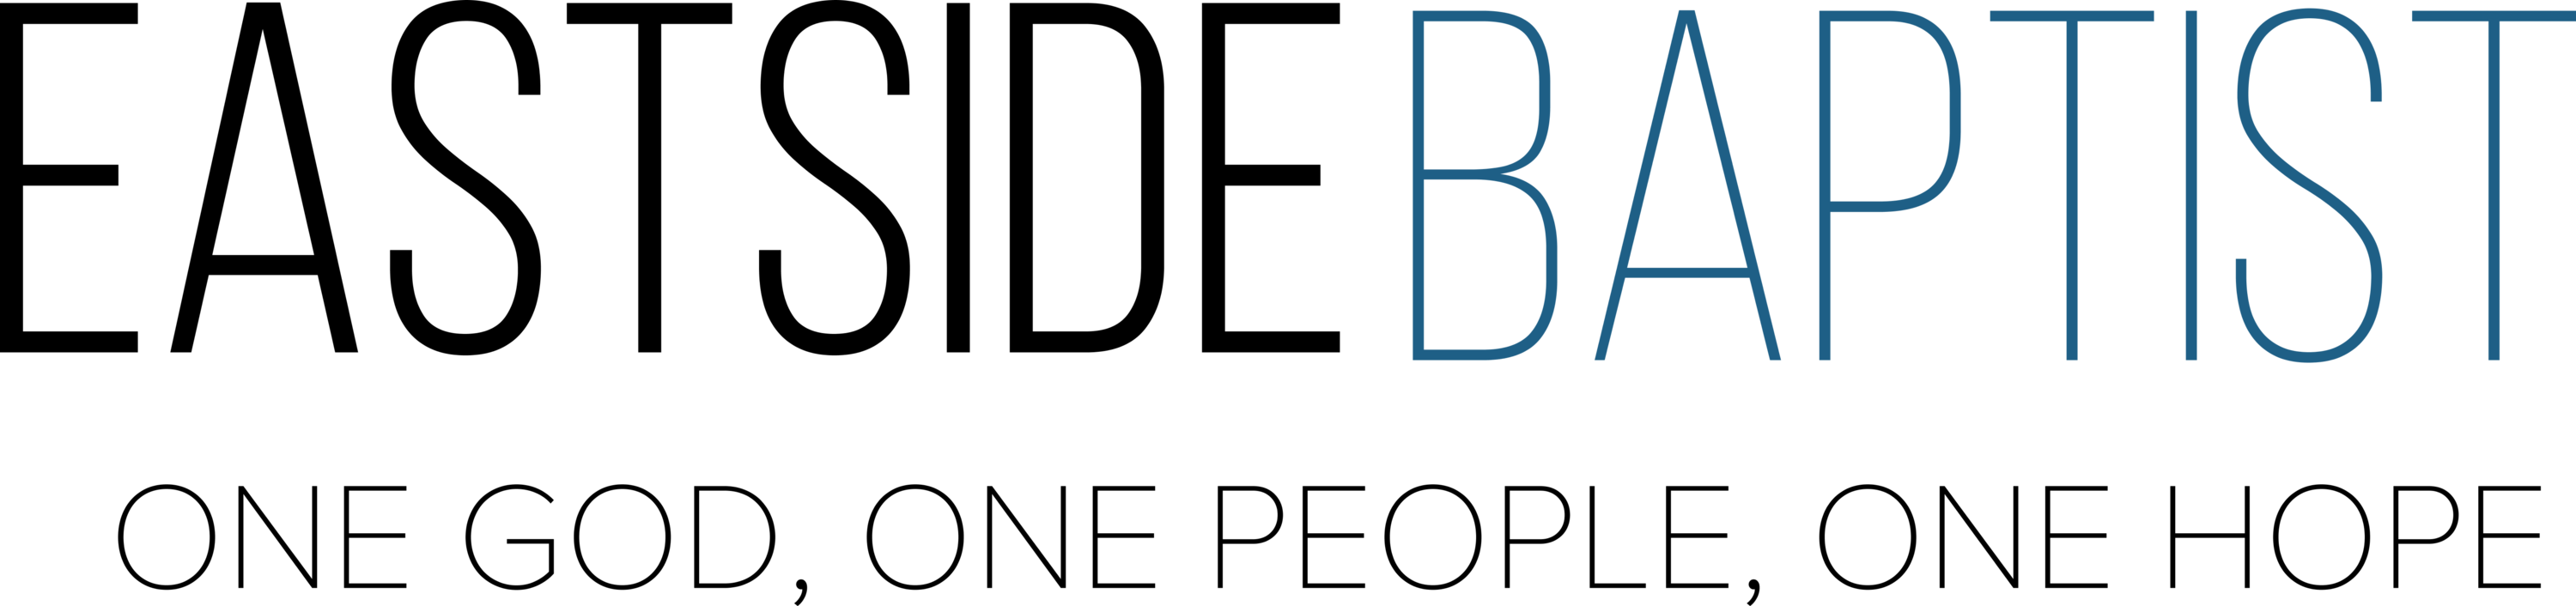 Eastside Baptist Church Logo